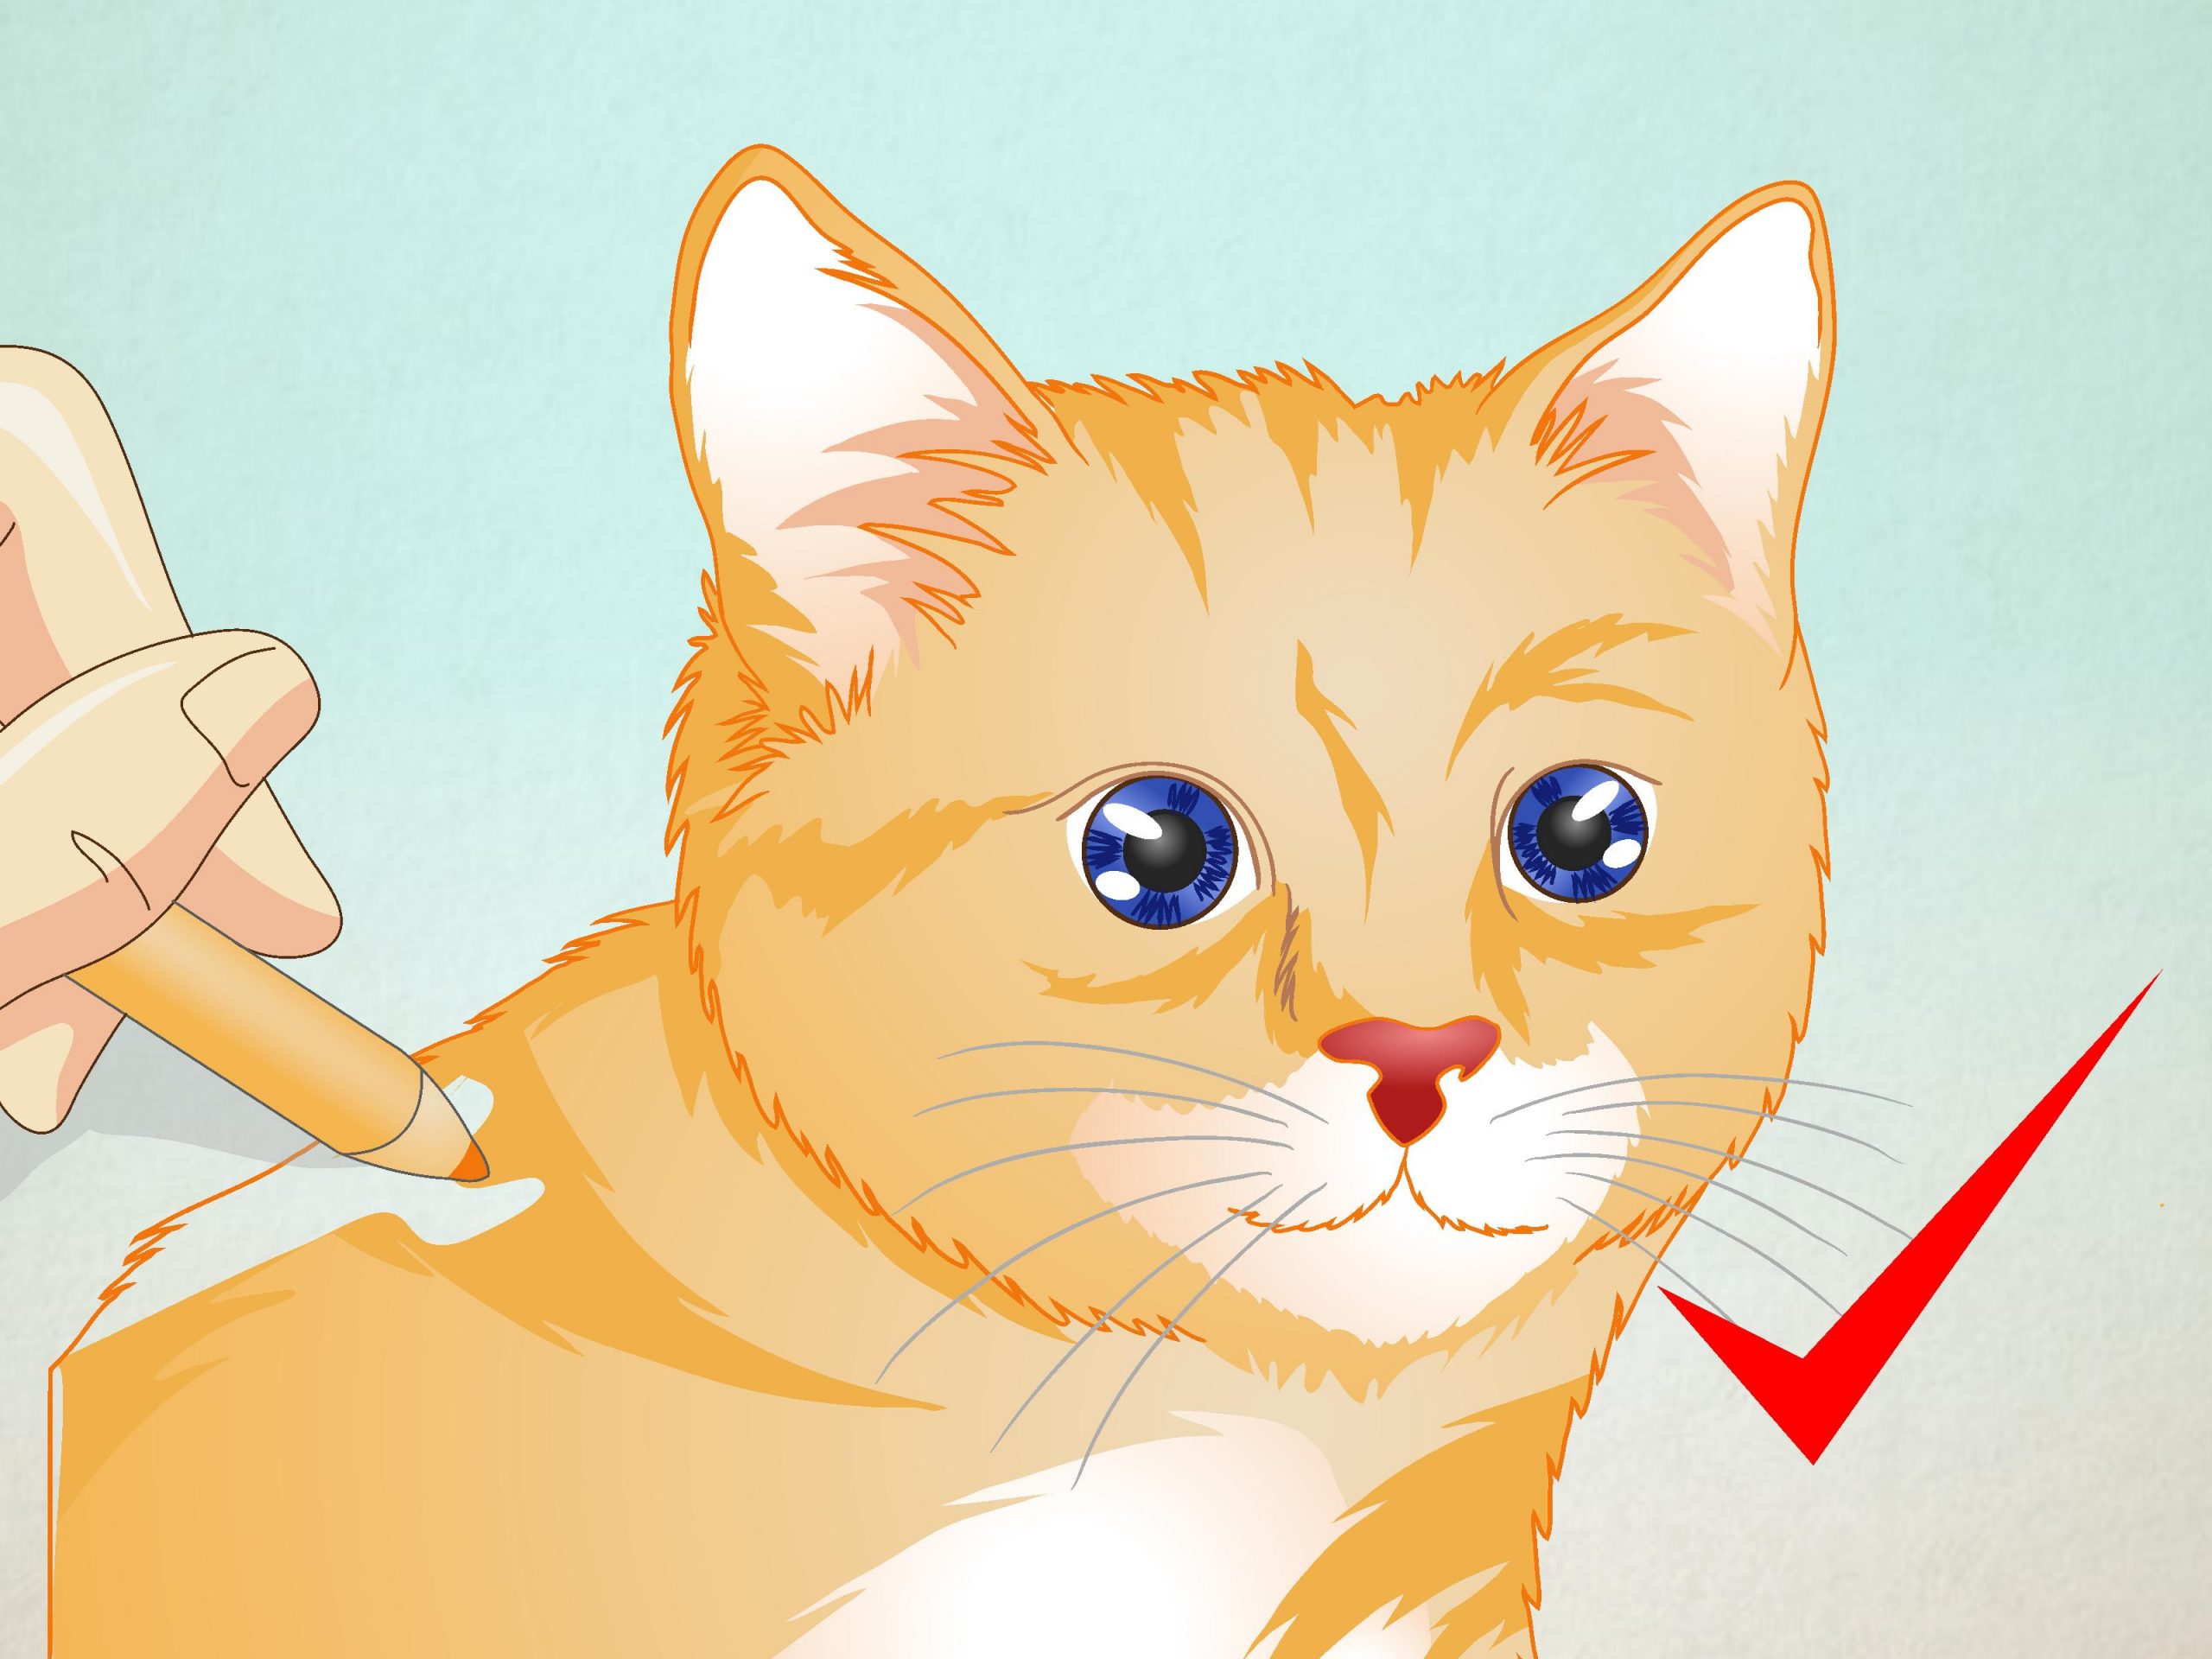 Ein Katzengesicht Zeichnen: 8 Schritte (Mit Bildern) – Wikihow ganzes Katzengesicht Zeichnen